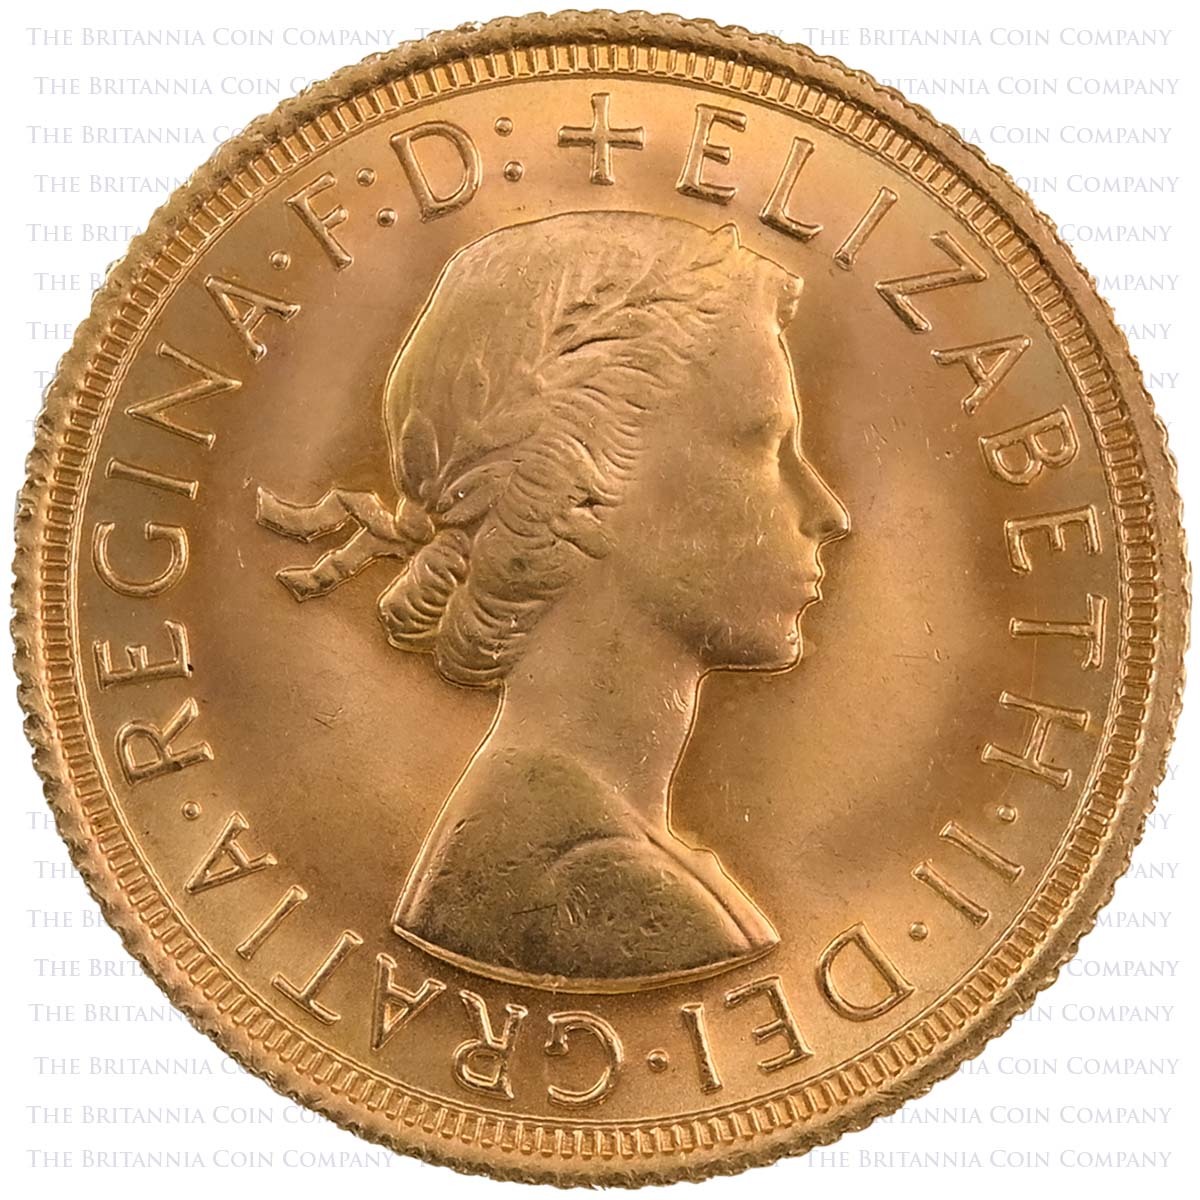 2004 Elizabeth II Gillick Portrait 13 Coin Set 1968 Sovereign Obverse